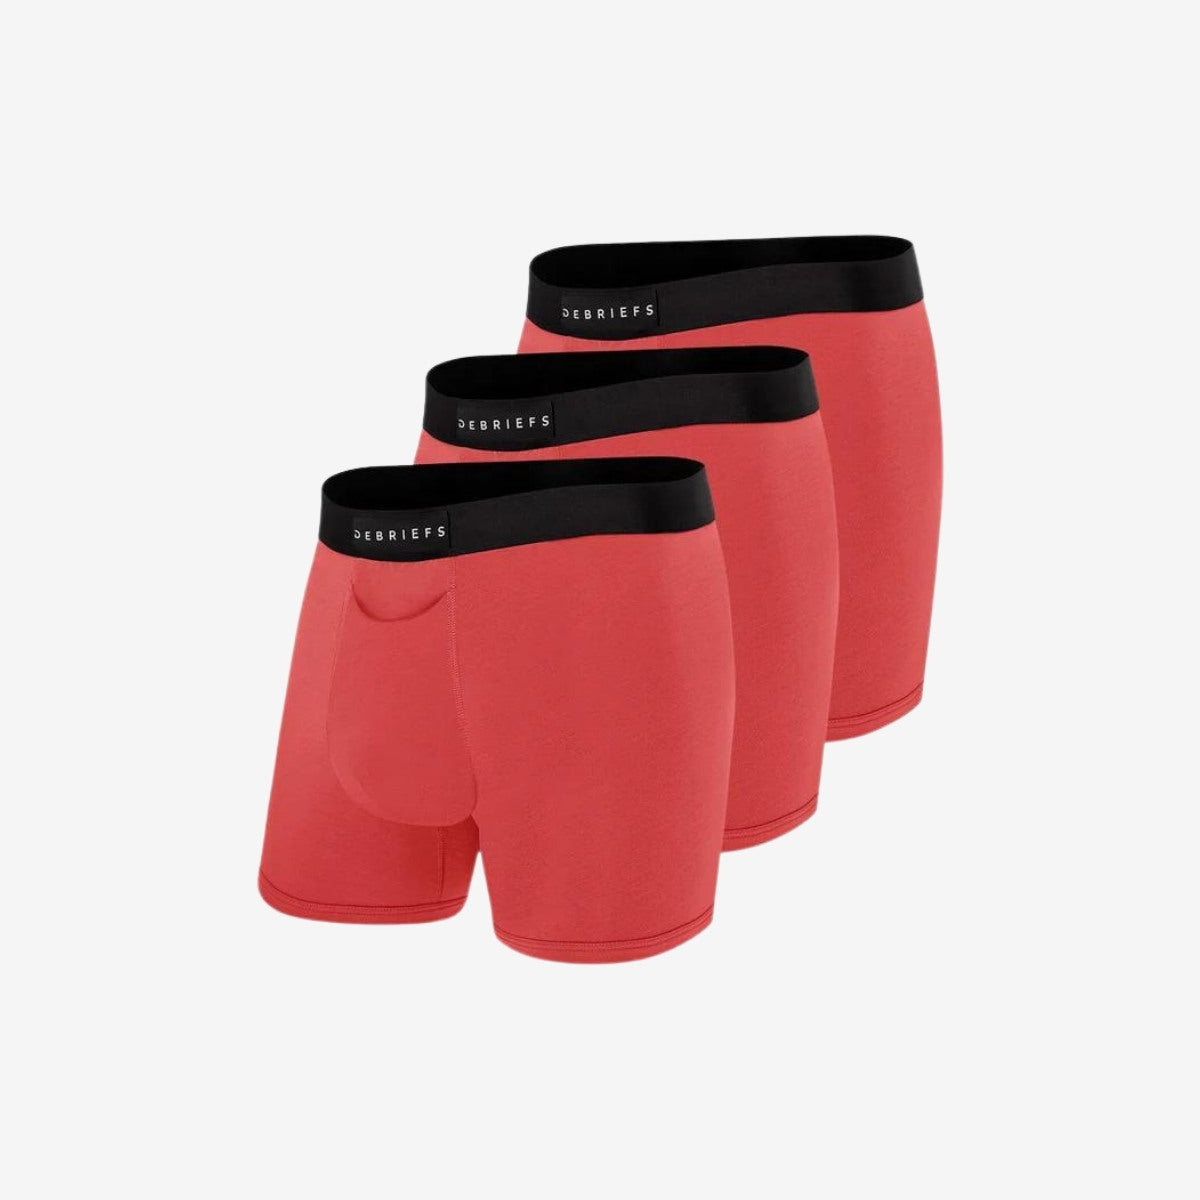 Mens Boxer Briefs Underwear Online 3 pack - Red